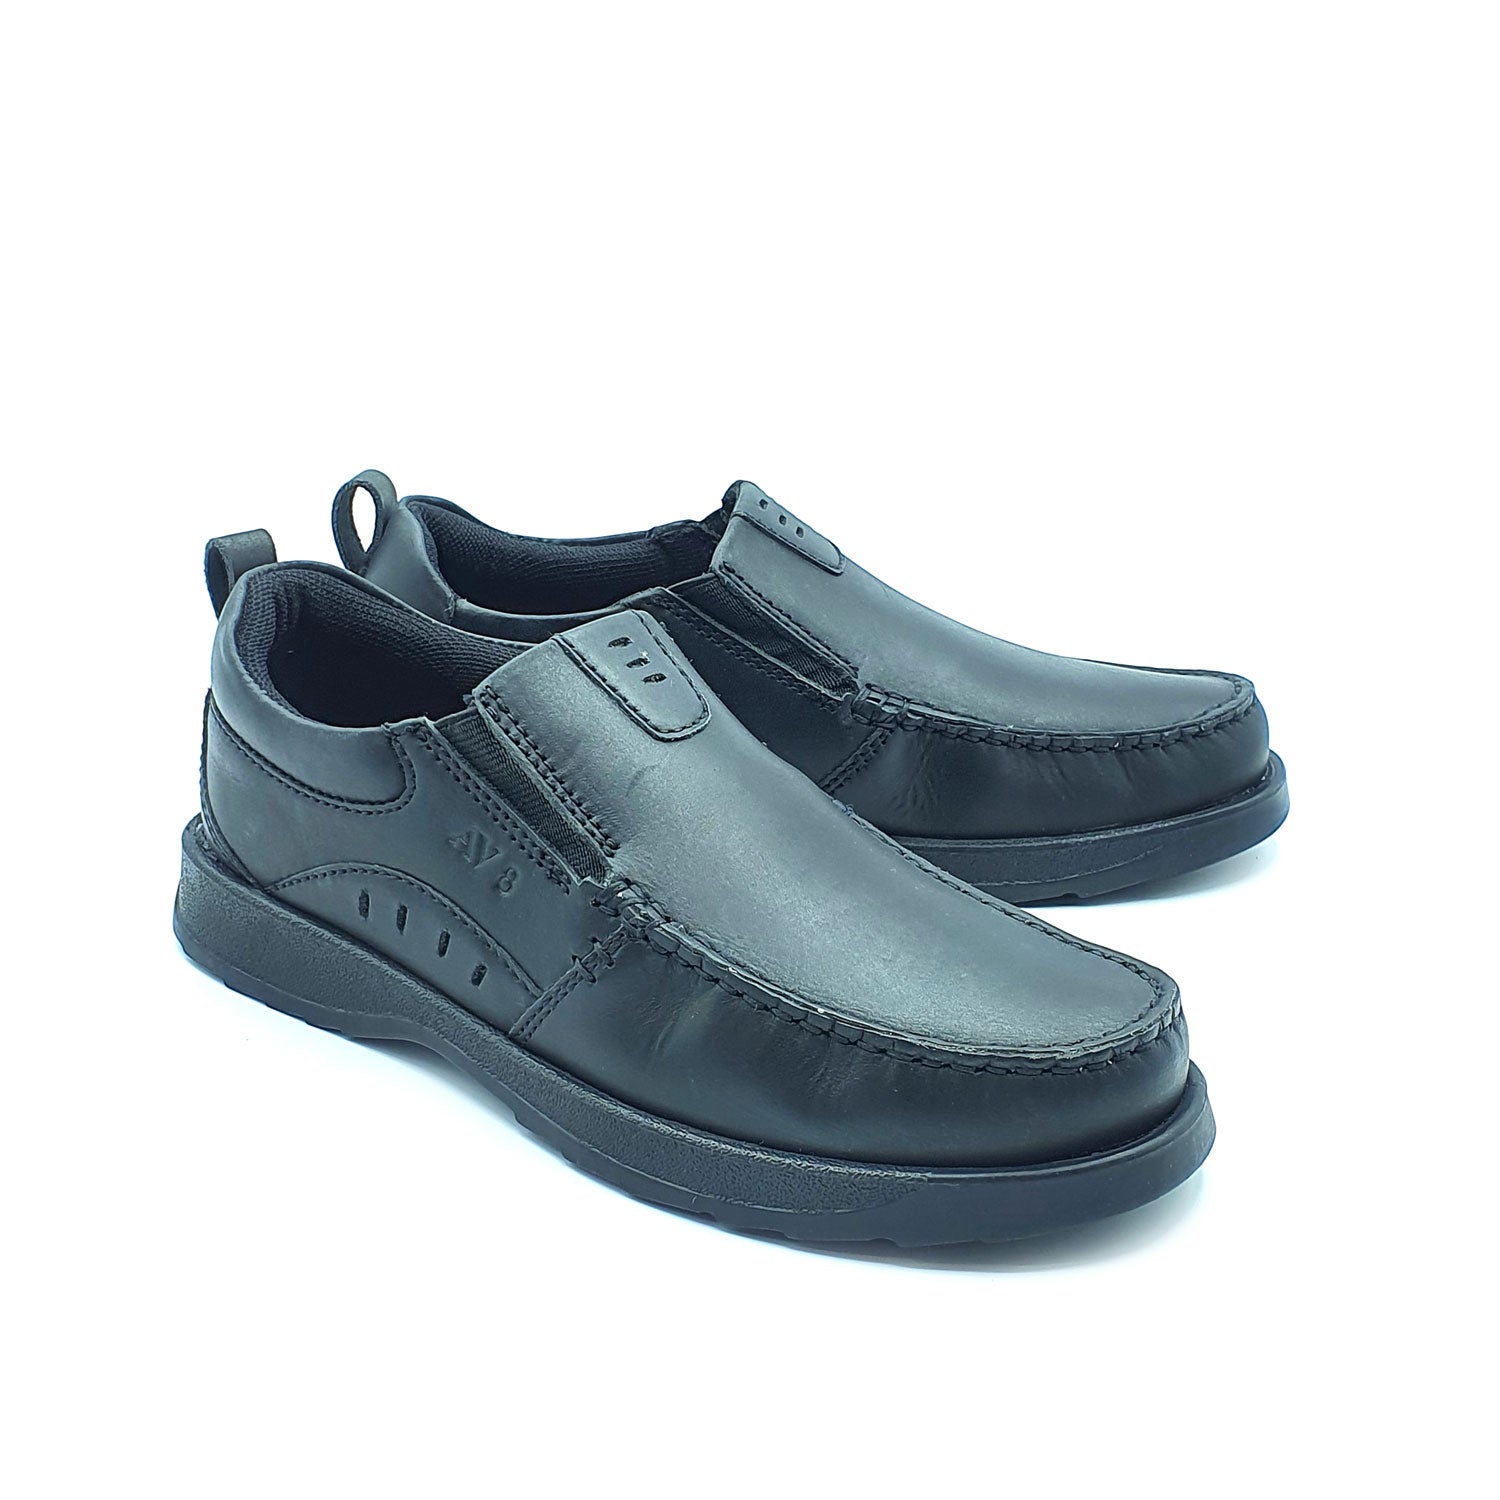 Dubarry Karter Junior Slip On Av8 Shoe - Black 1 Shaws Department Stores